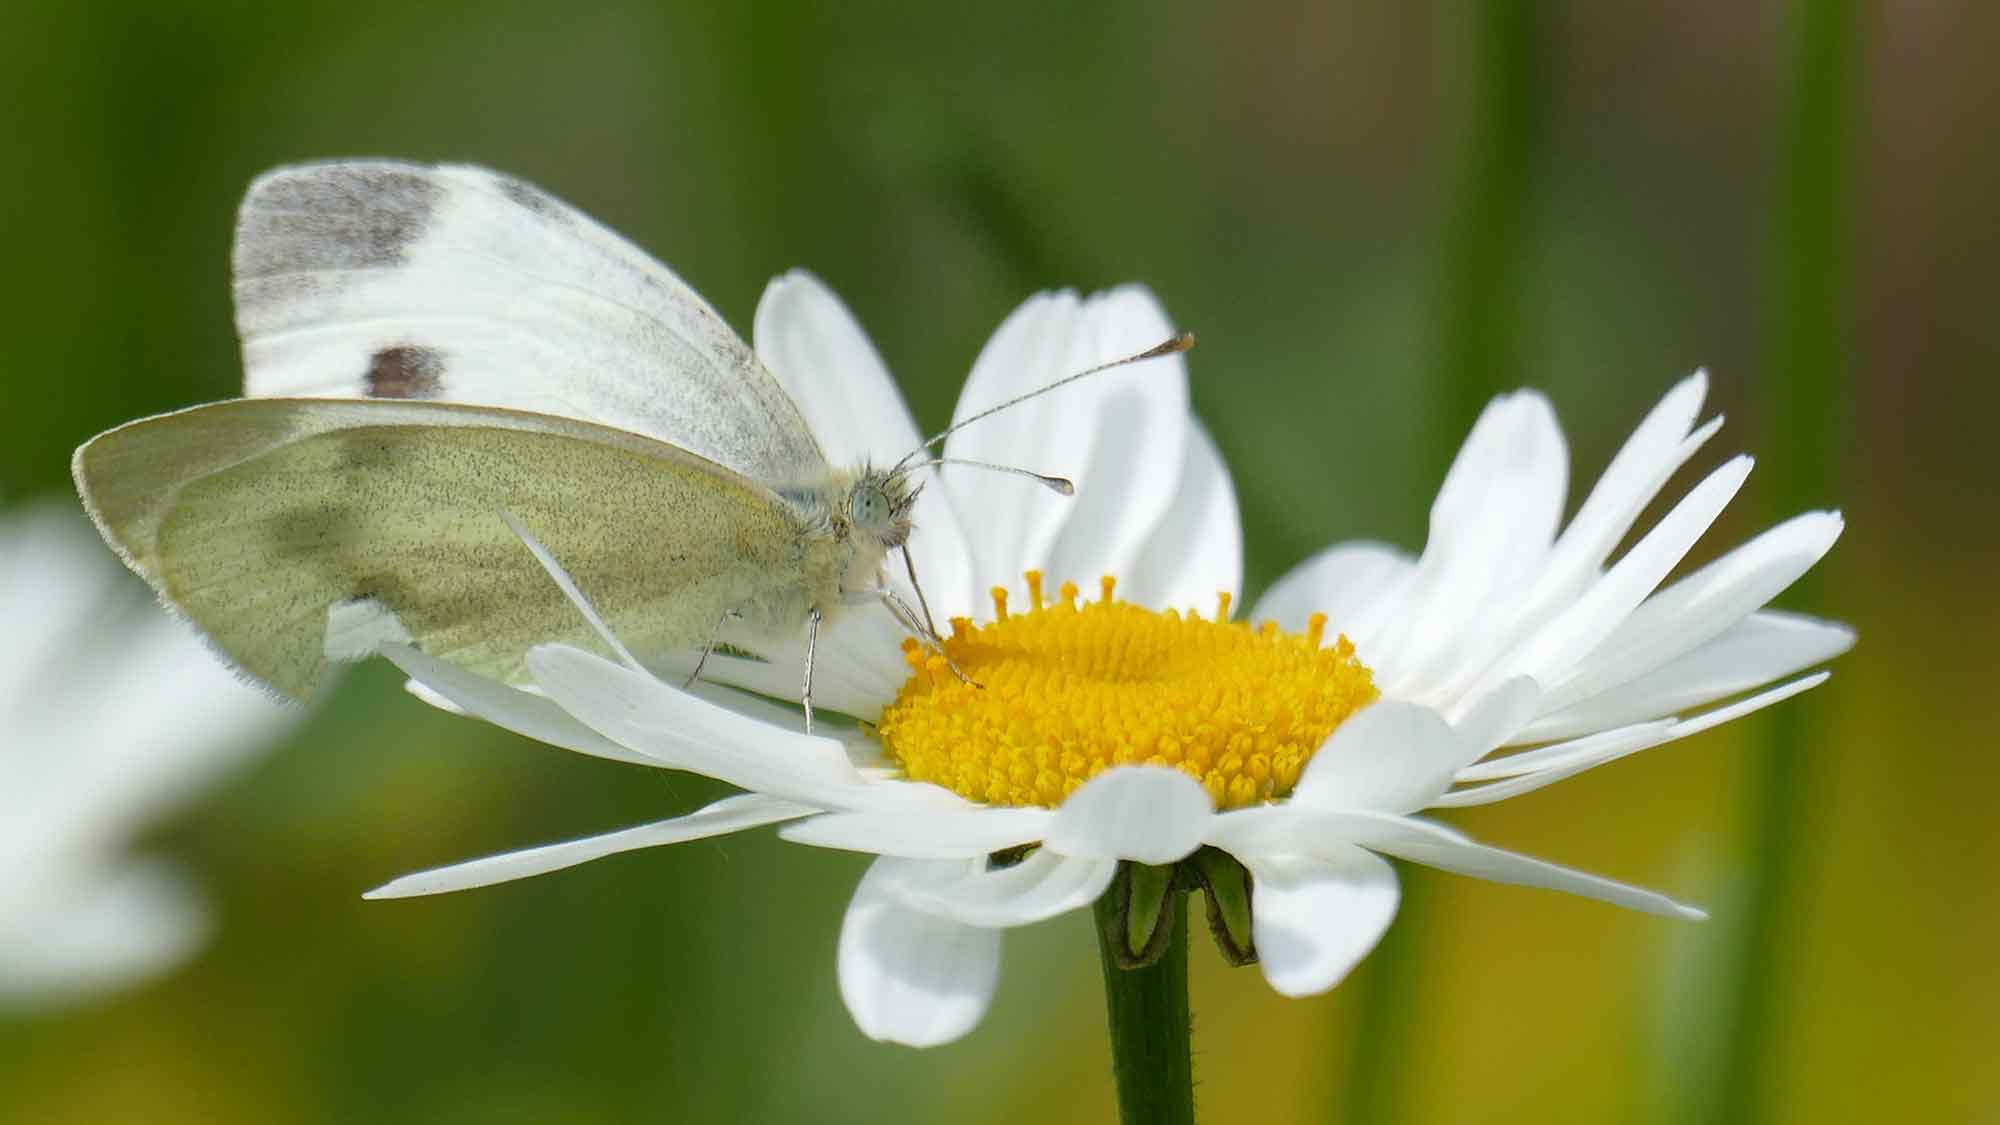 Gütersloh: Stadtverwaltung fördert insektenfreundliche Gärten mit kostenlosen Wildblumensamenmischungen